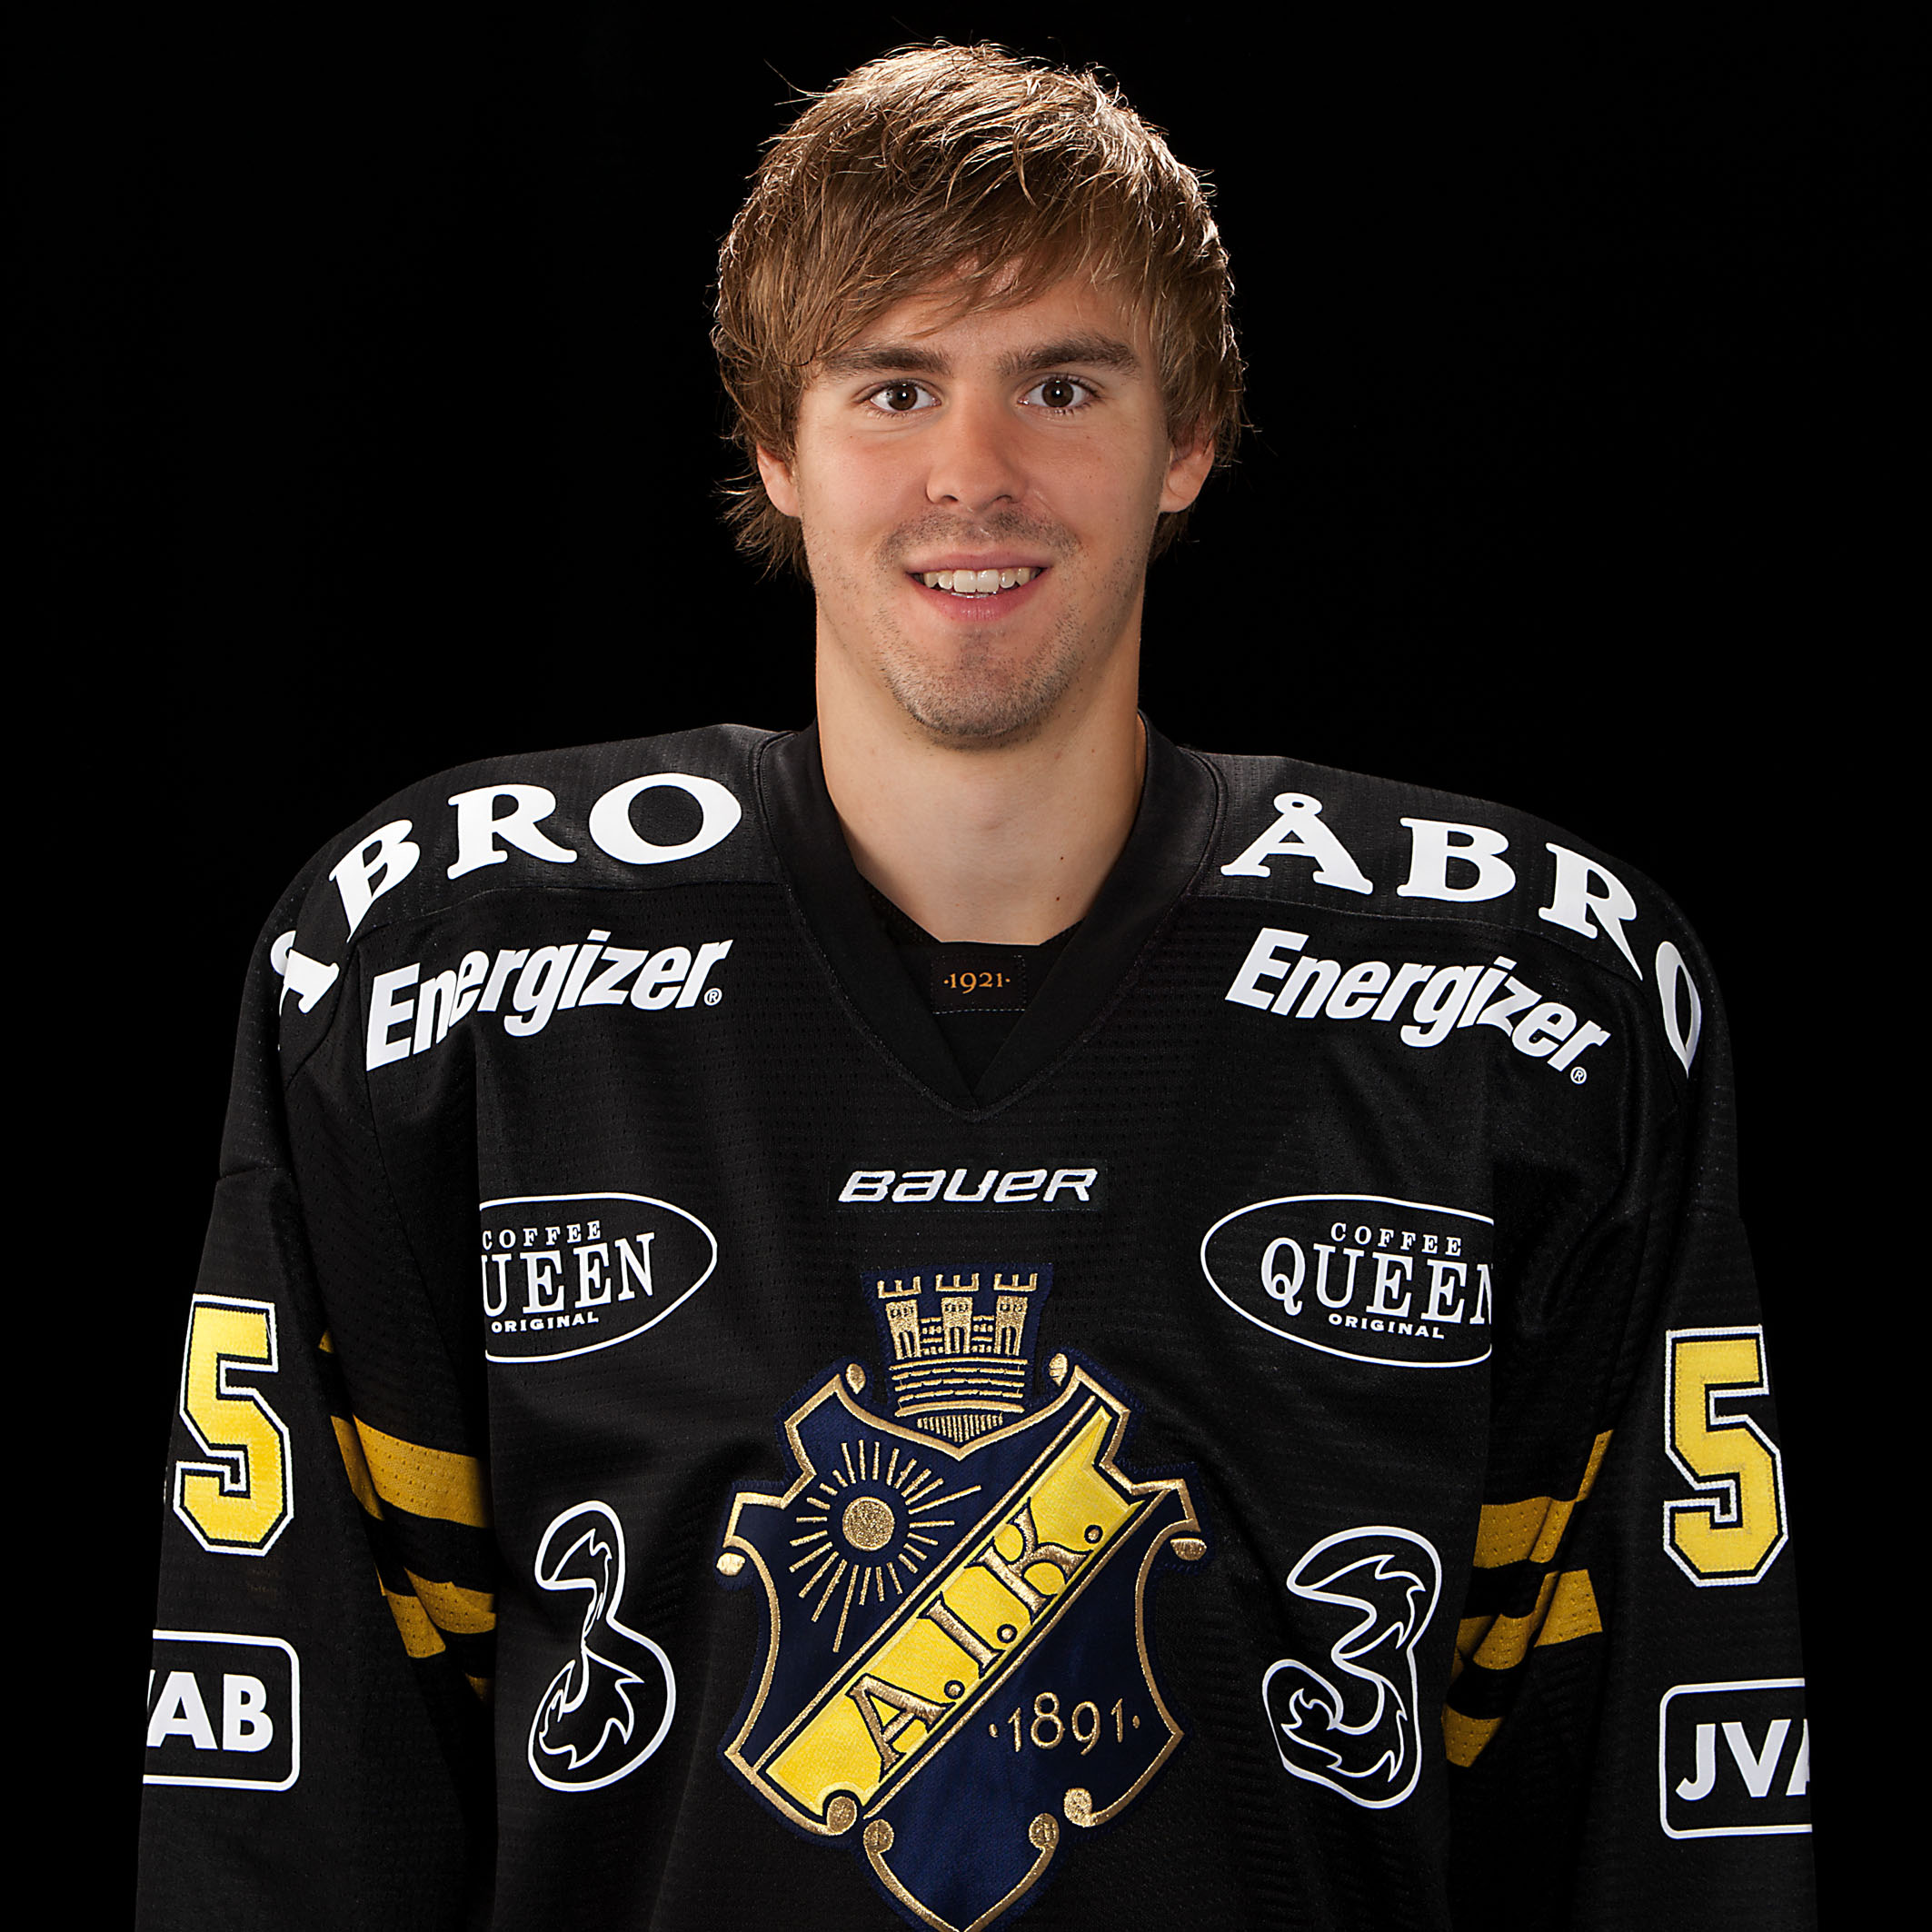 elitserien, Carin Götblad, KHL, AIK